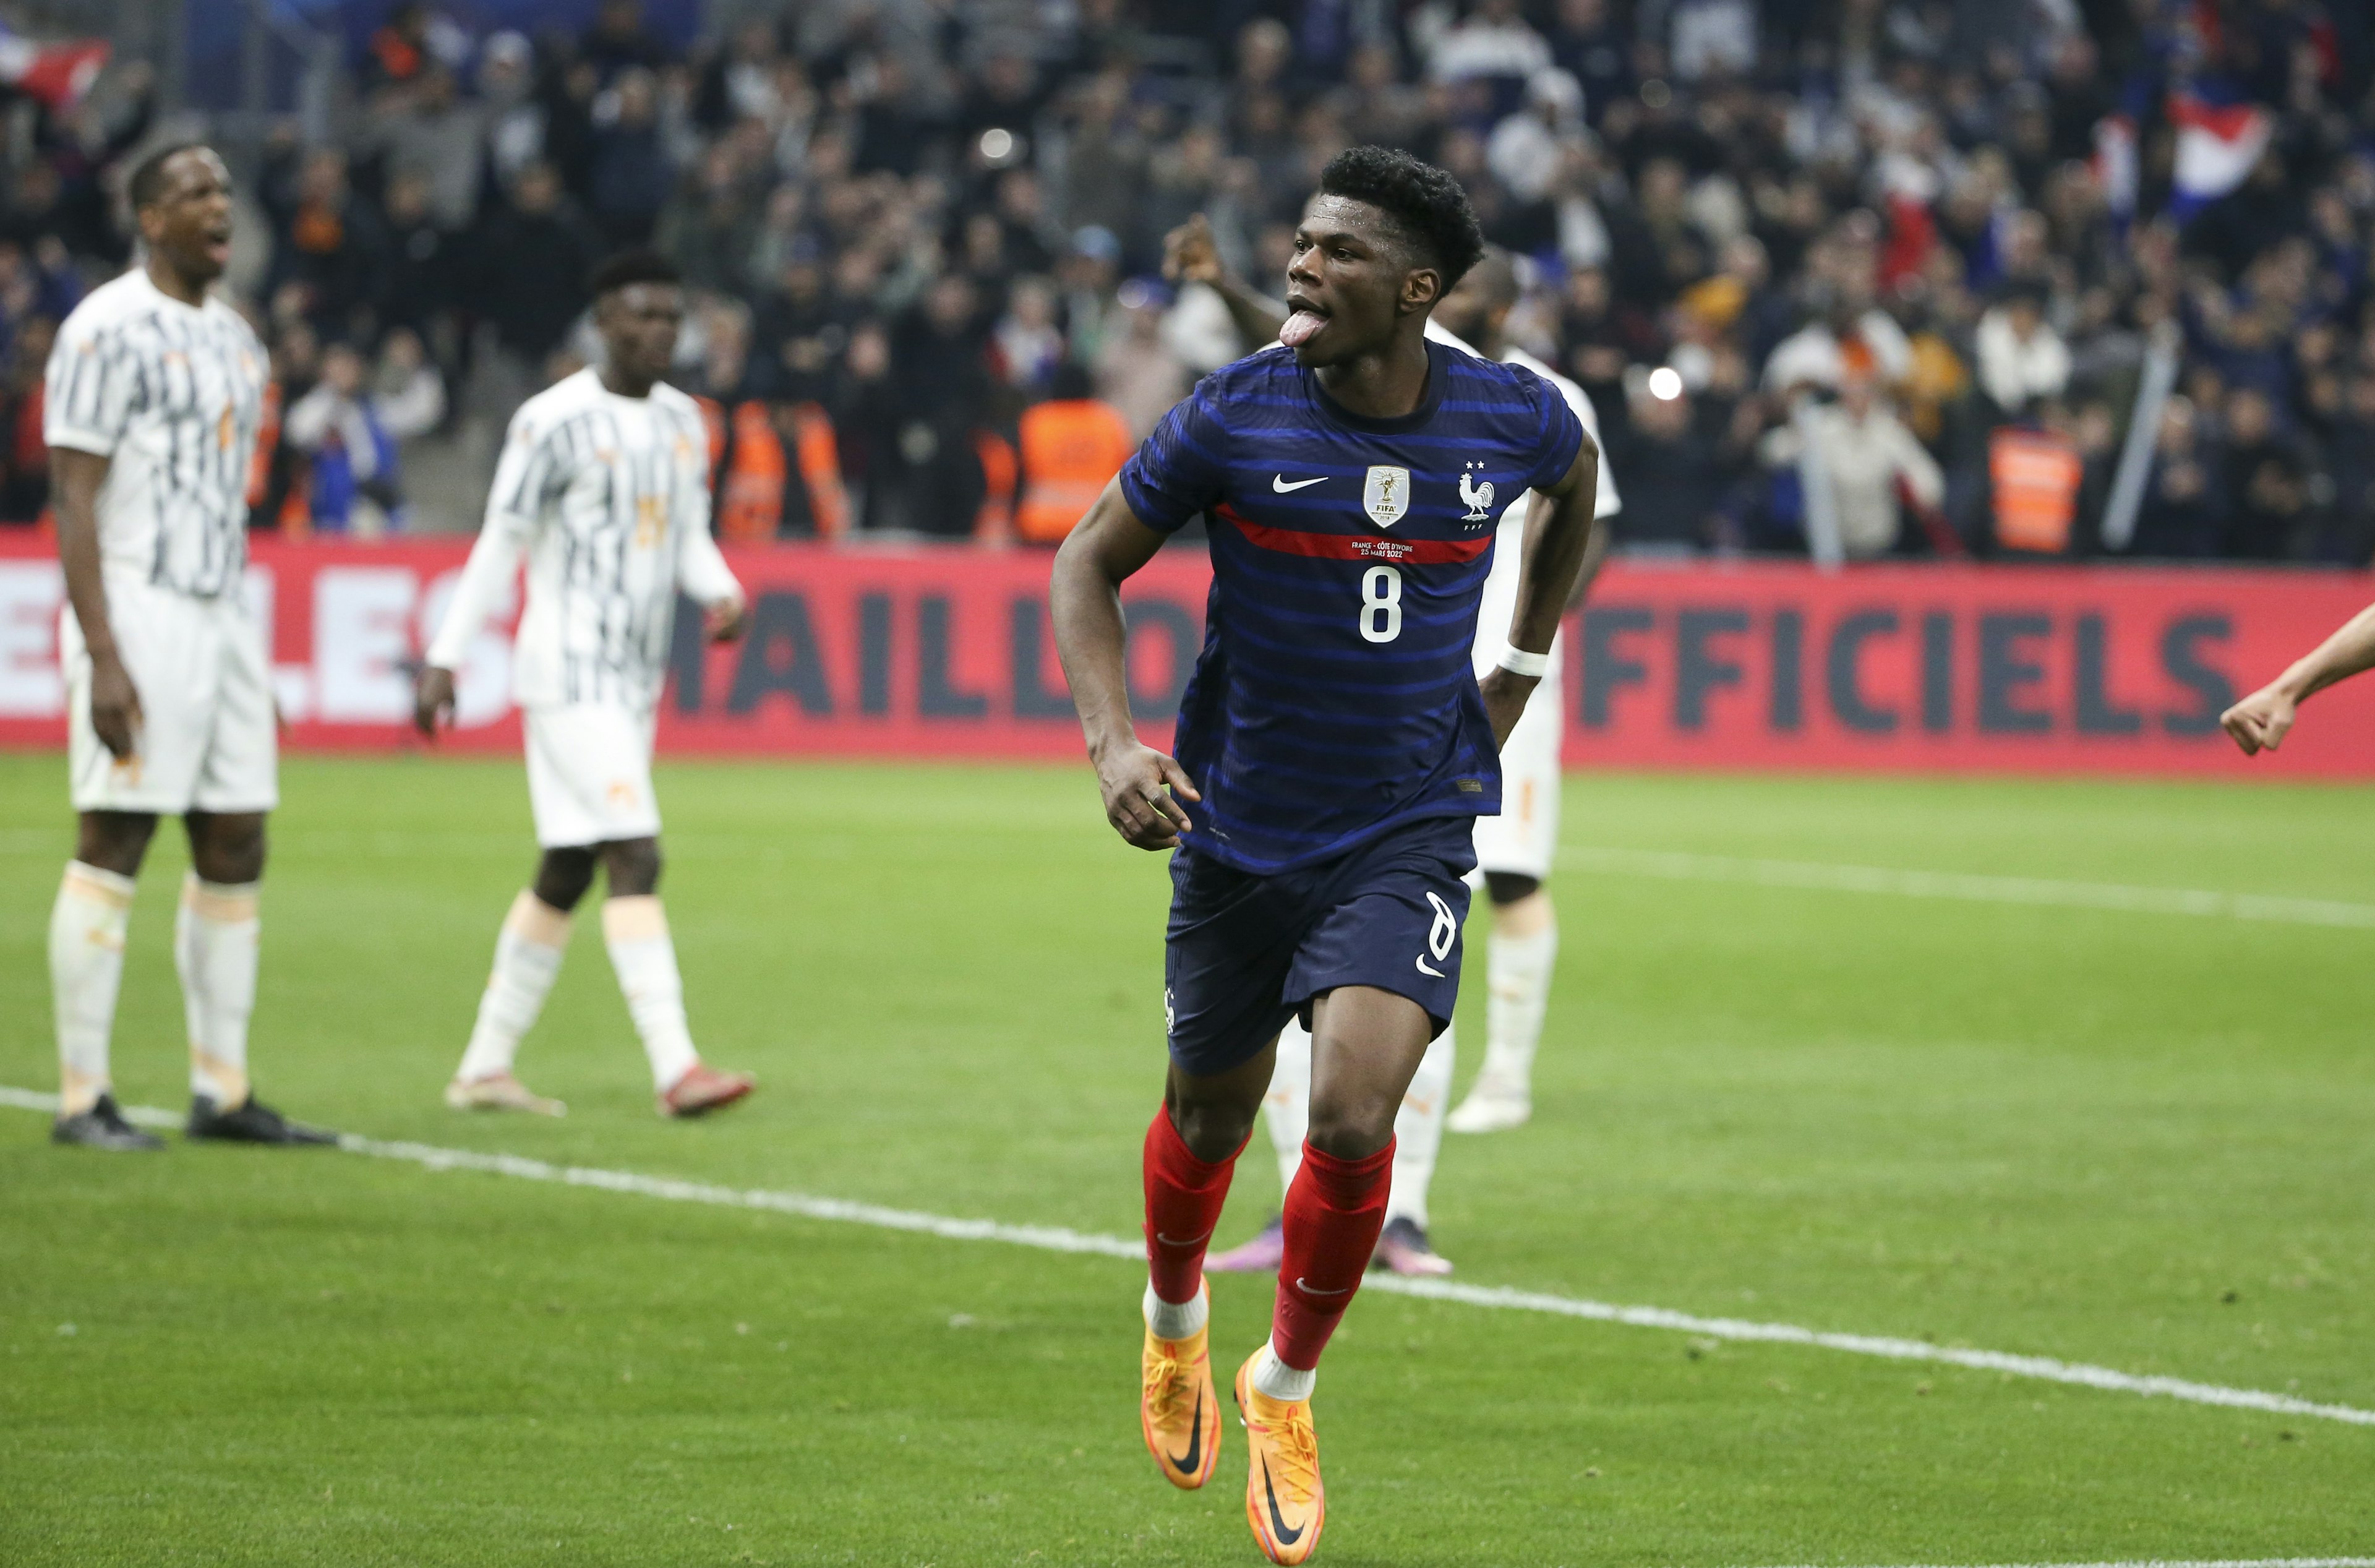 France v Ivory Coast - International Friendly